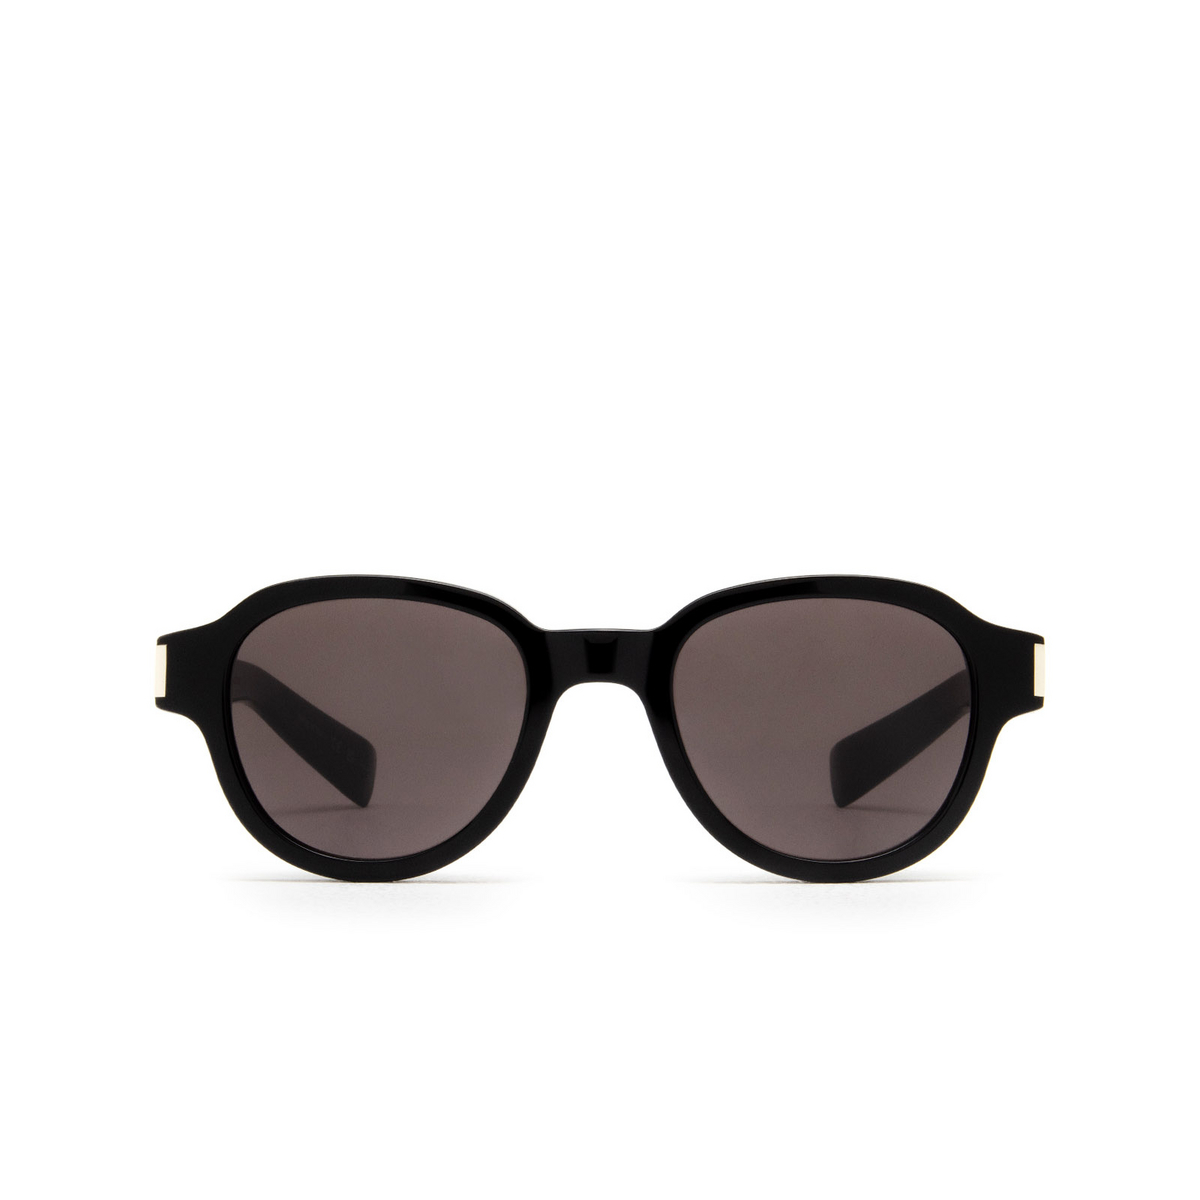 Saint Laurent SL 546 Sunglasses 001 Black - front view